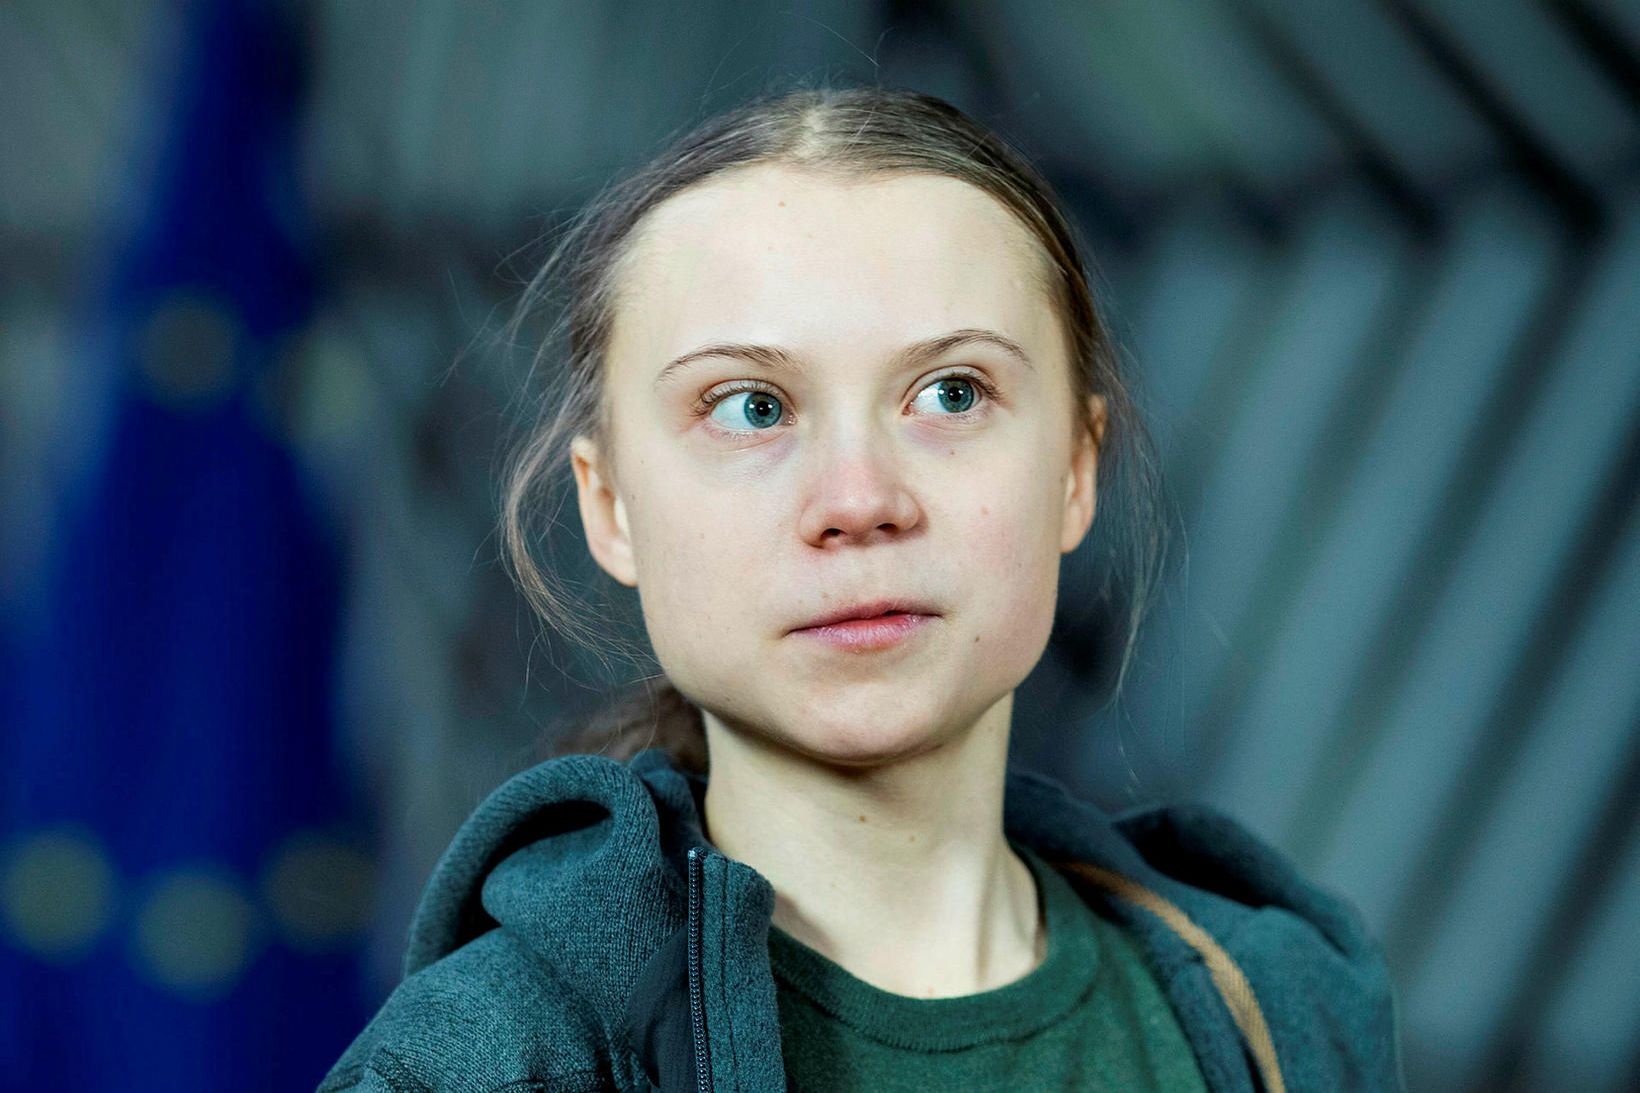 Greta Thunberg styður baráttu UNICEF fyrir réttindum allra barna.